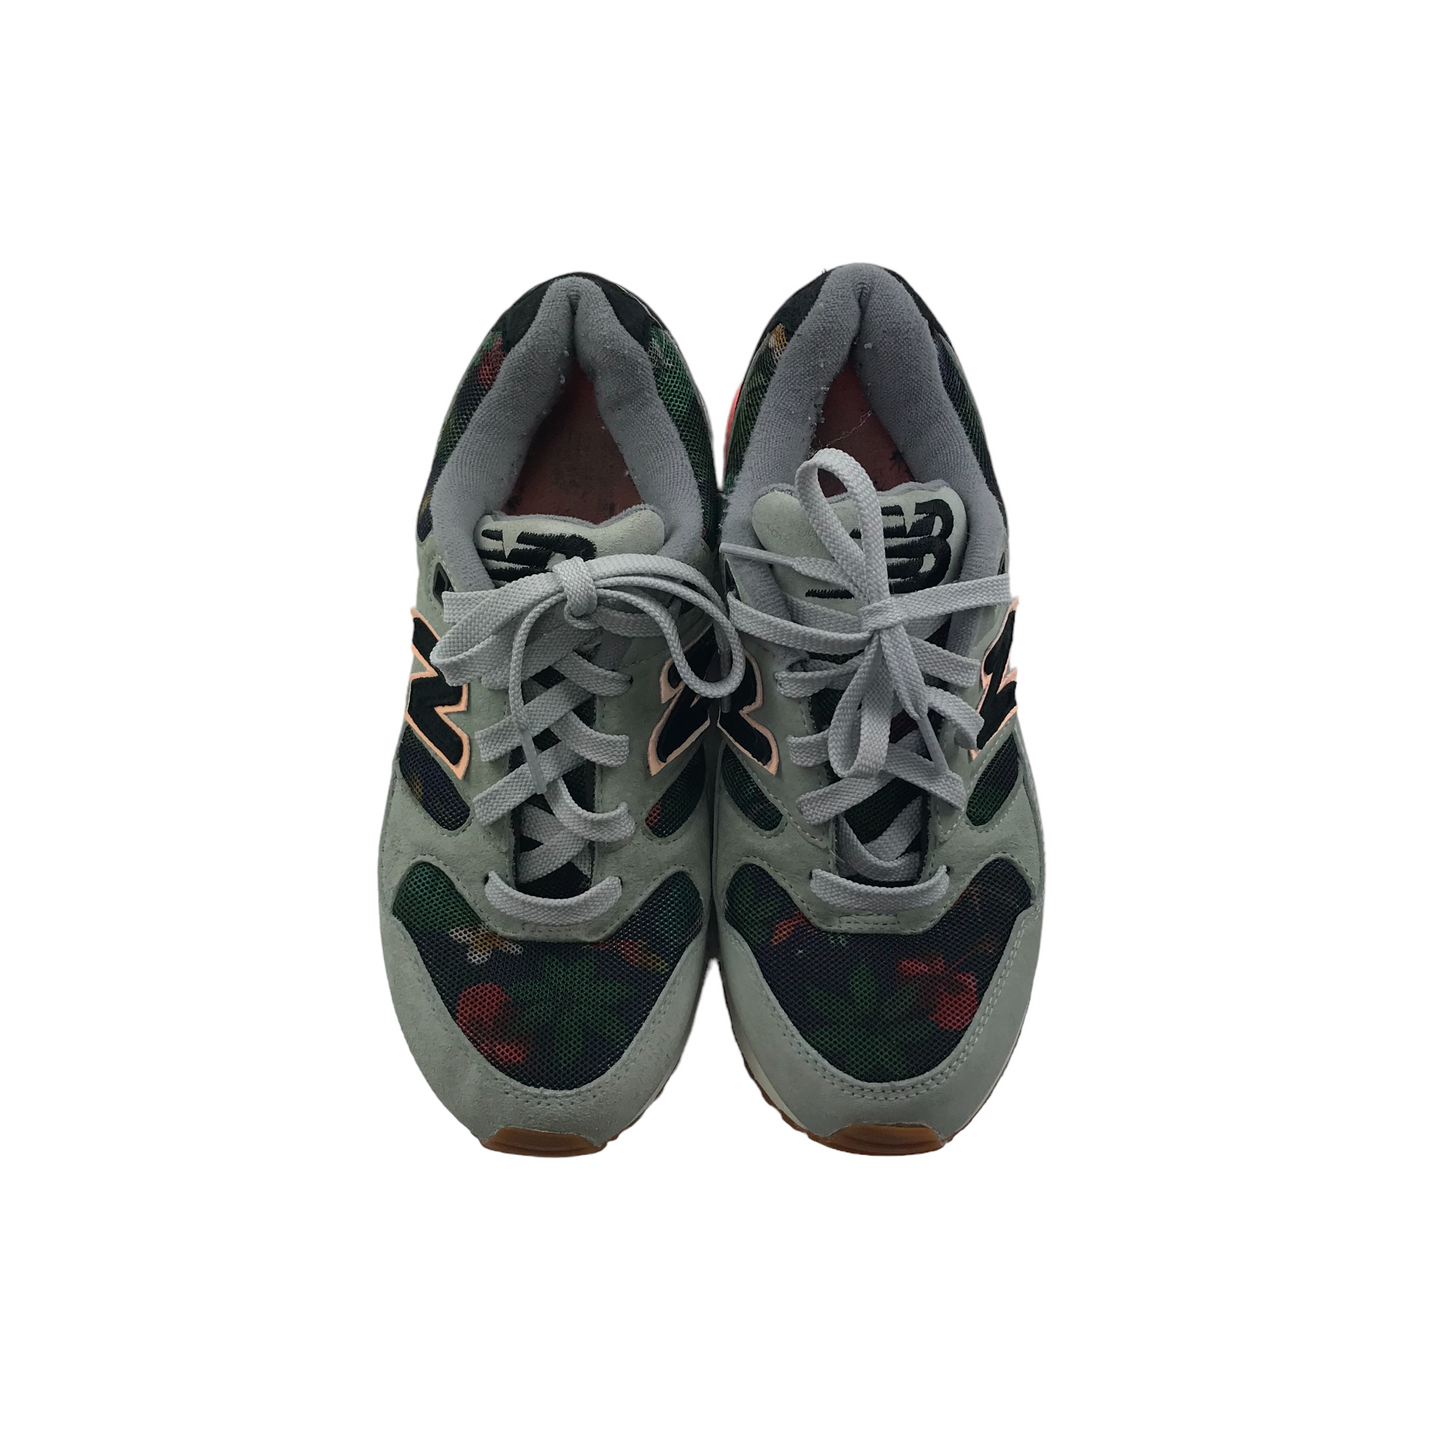 New Balance 530 Encap Grey Floral Trainers Shoe Size 5